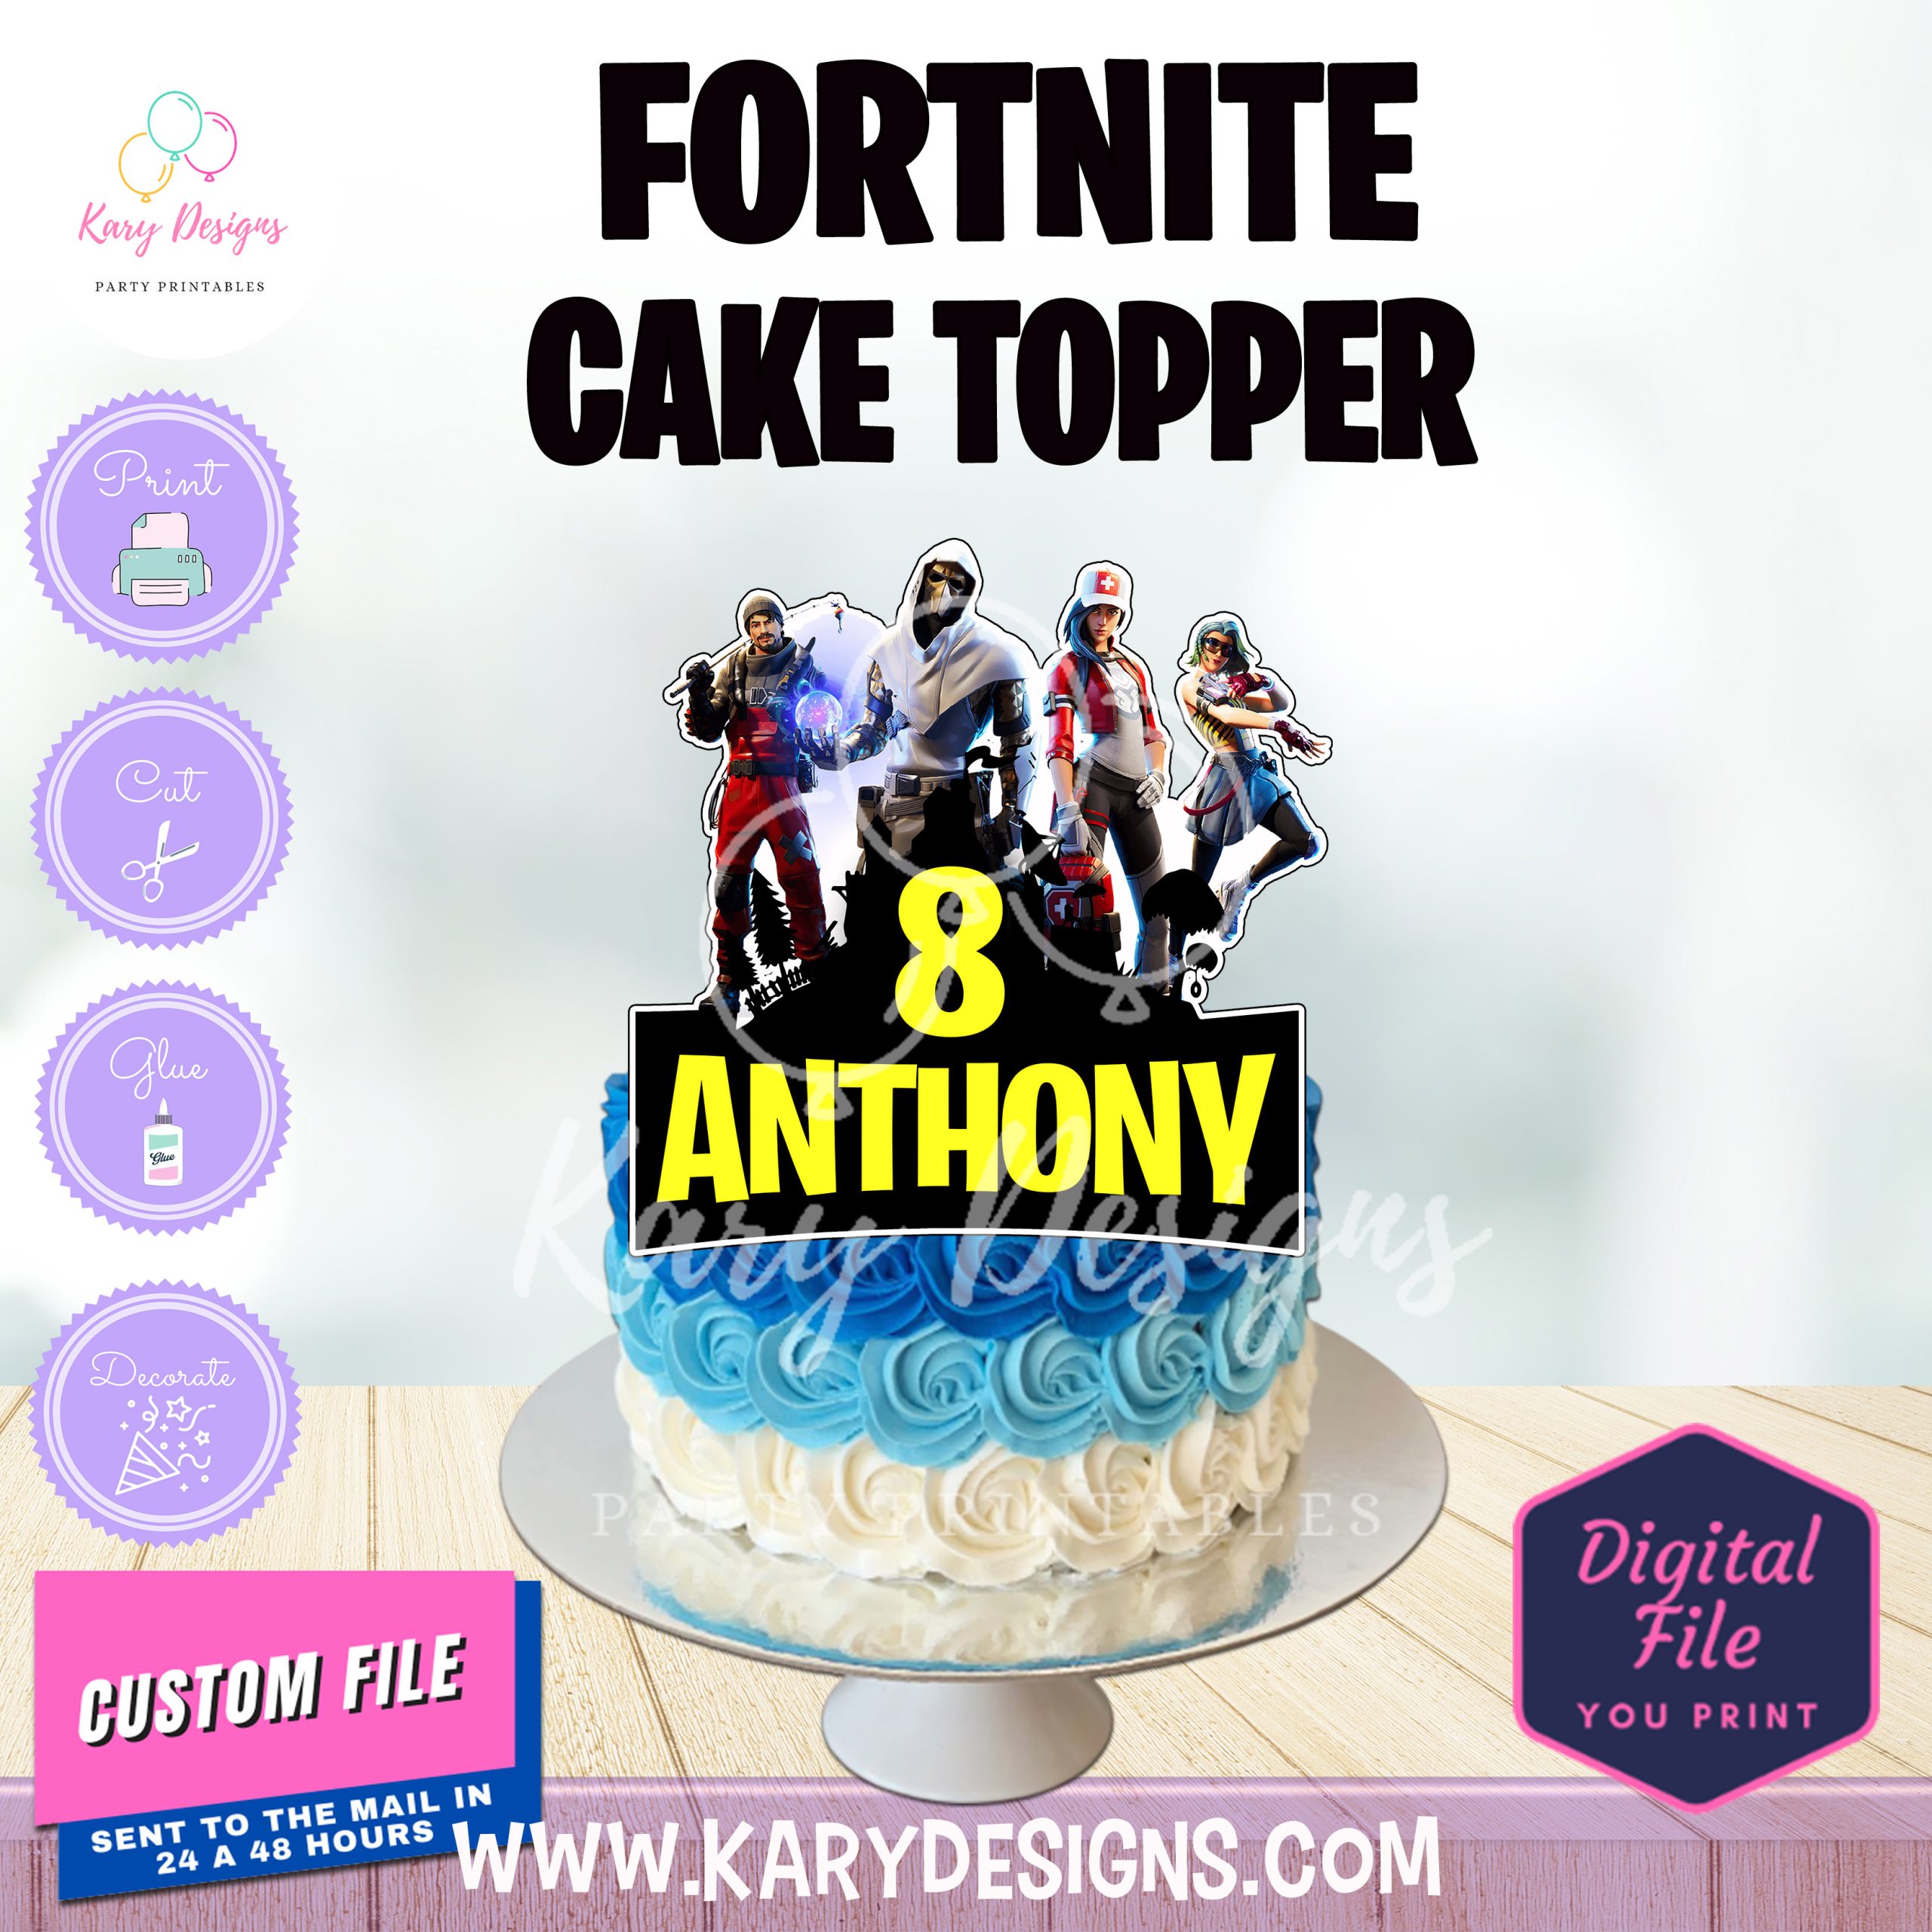 FORTNITE CAKE TOPPER - Kary Designs